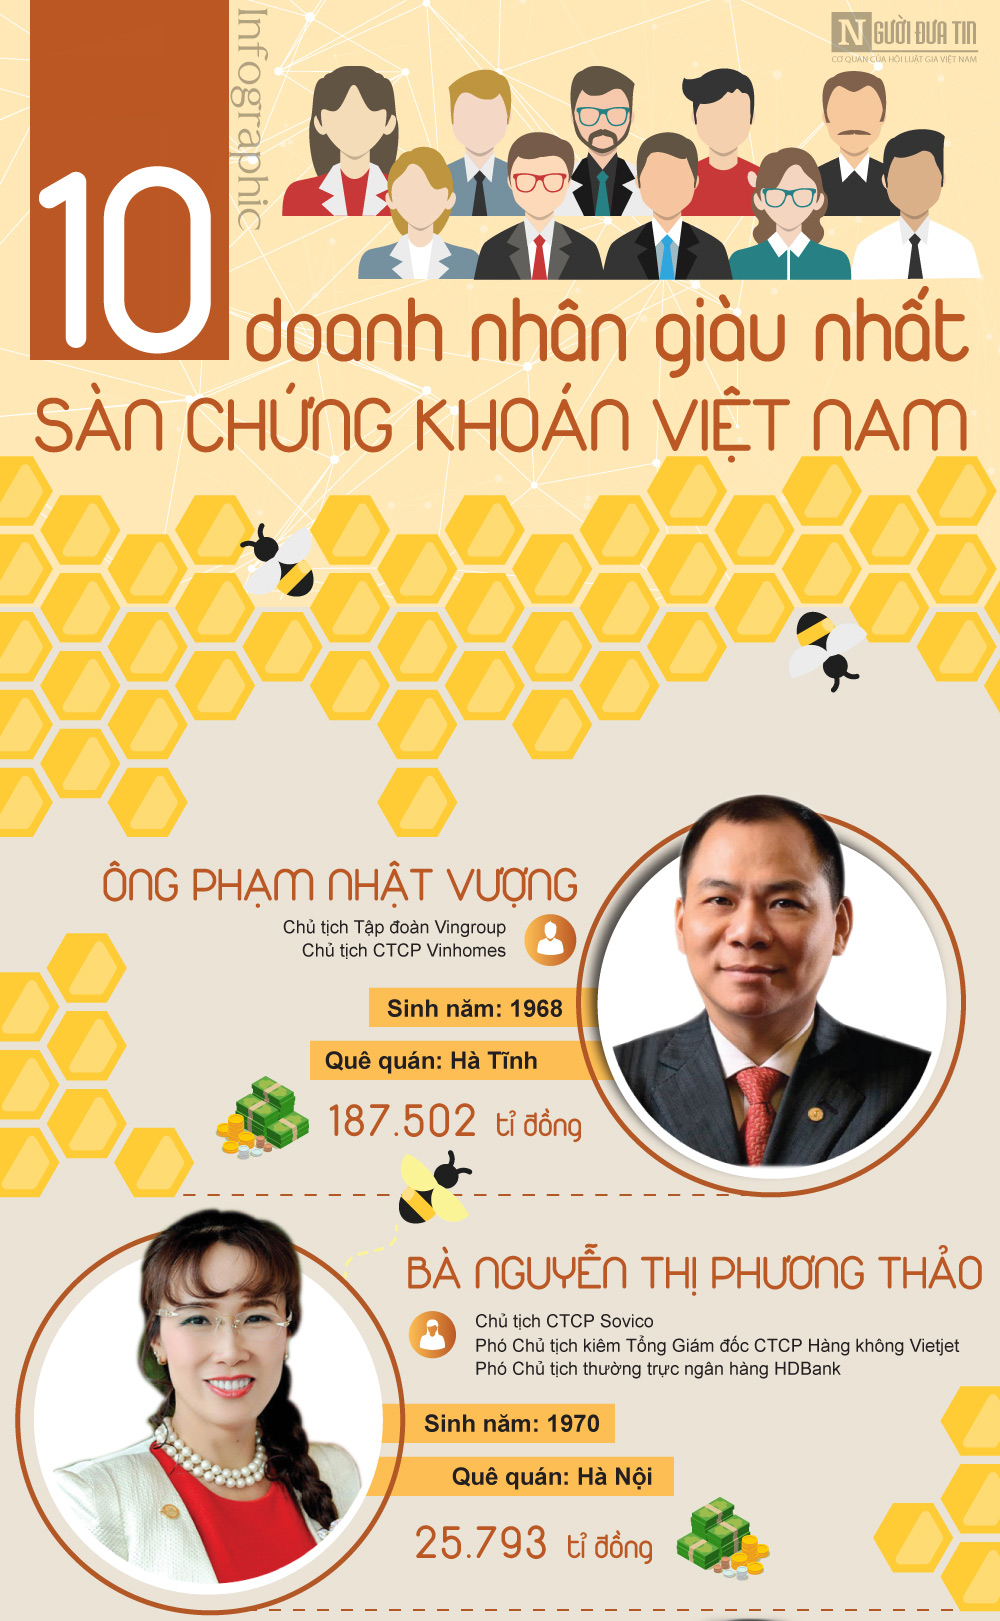 [Infographic] Khối tài sản khủng của 10 doanh nhân giàu nhất Việt Nam - 1